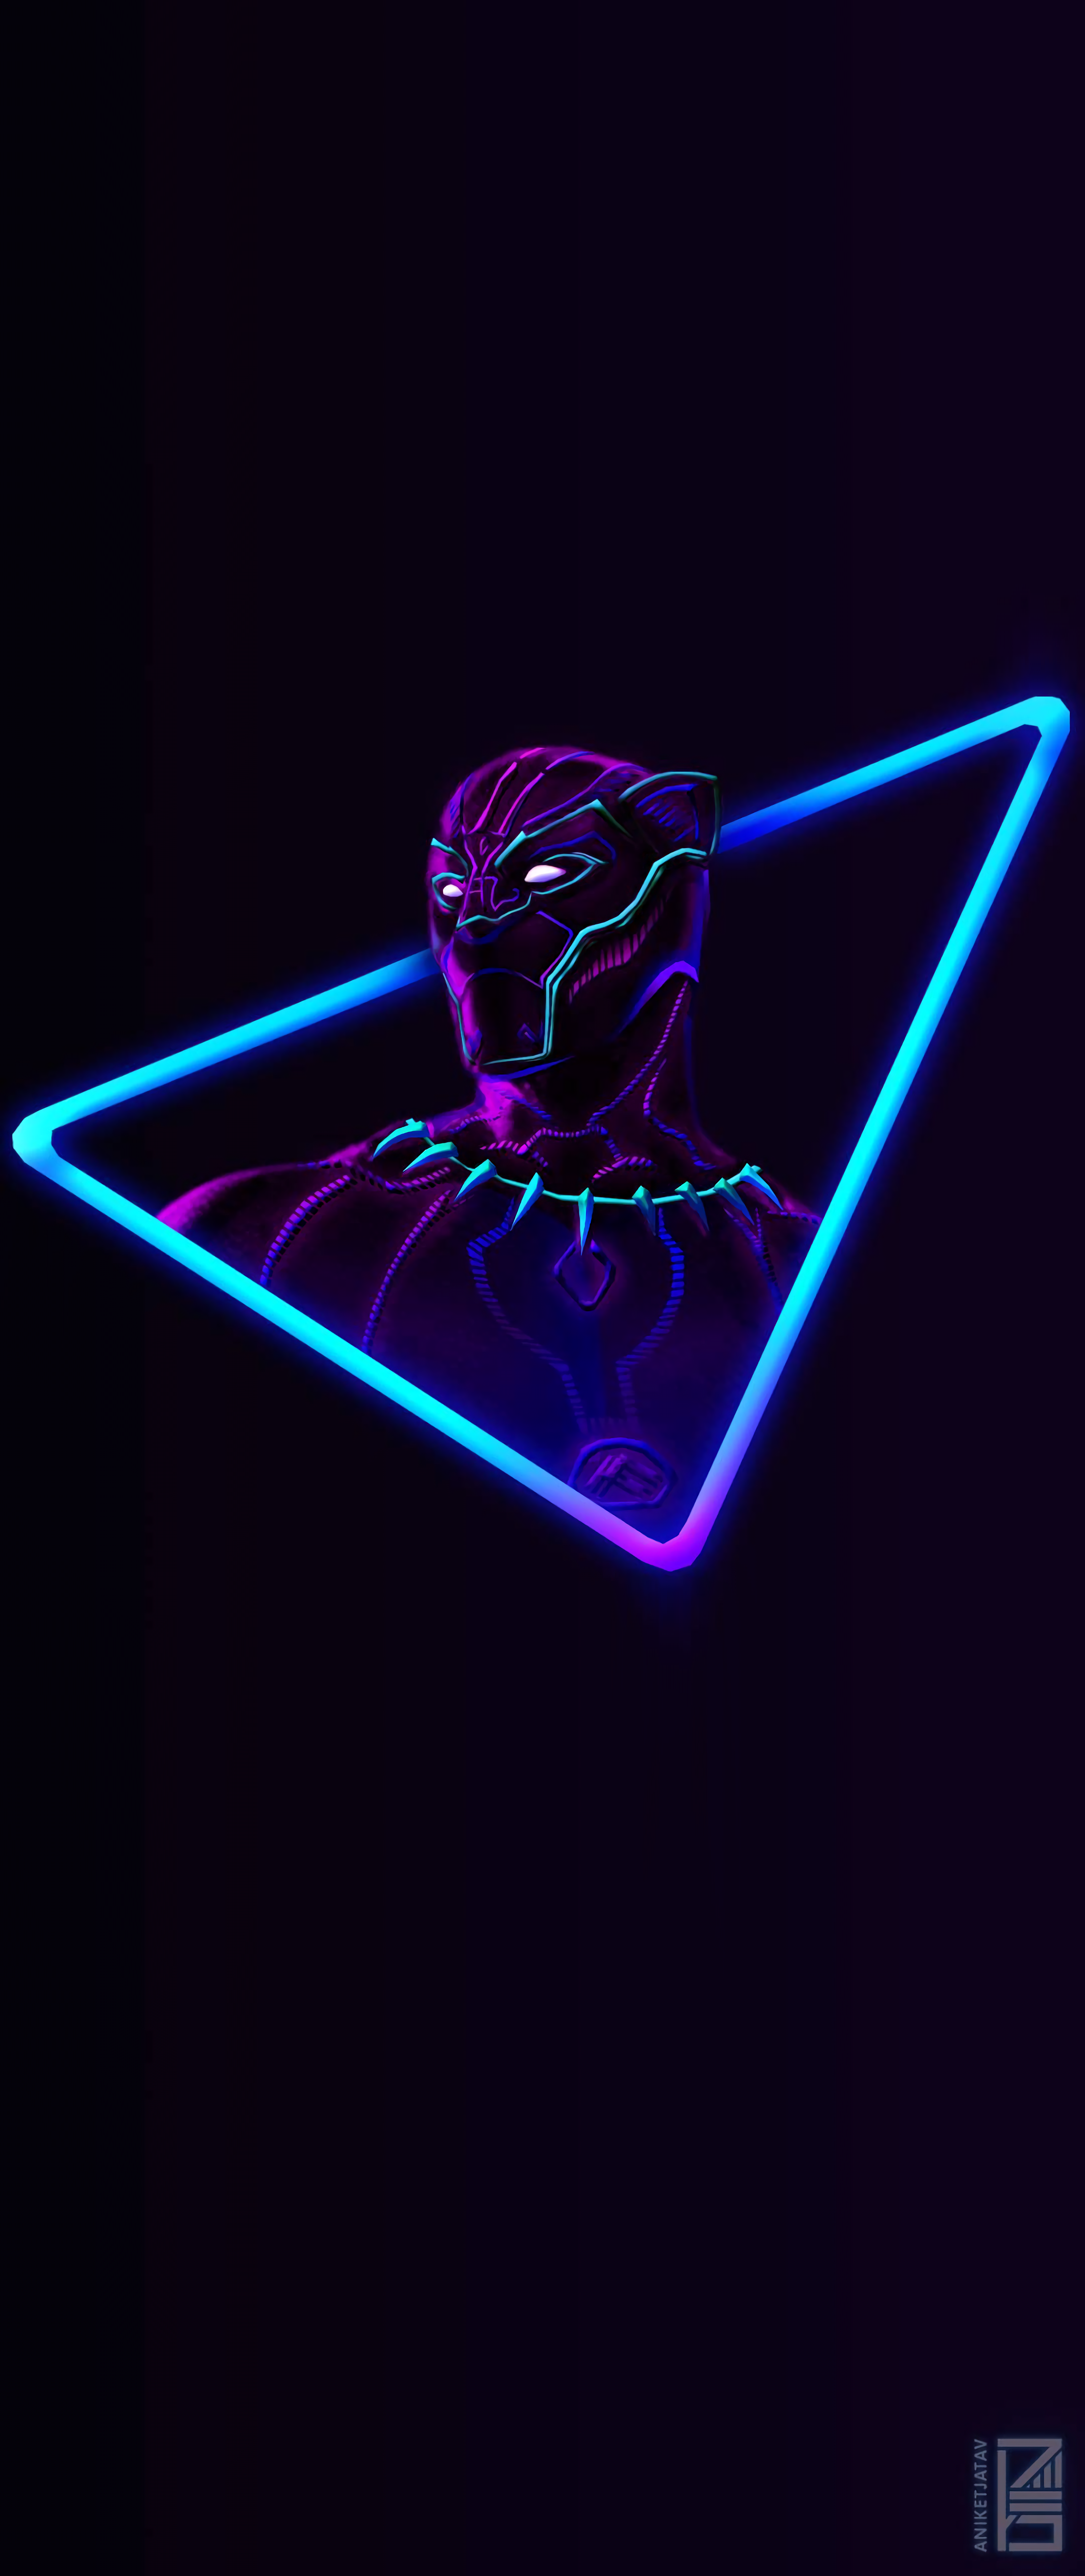 Neon 4k Wallpaper